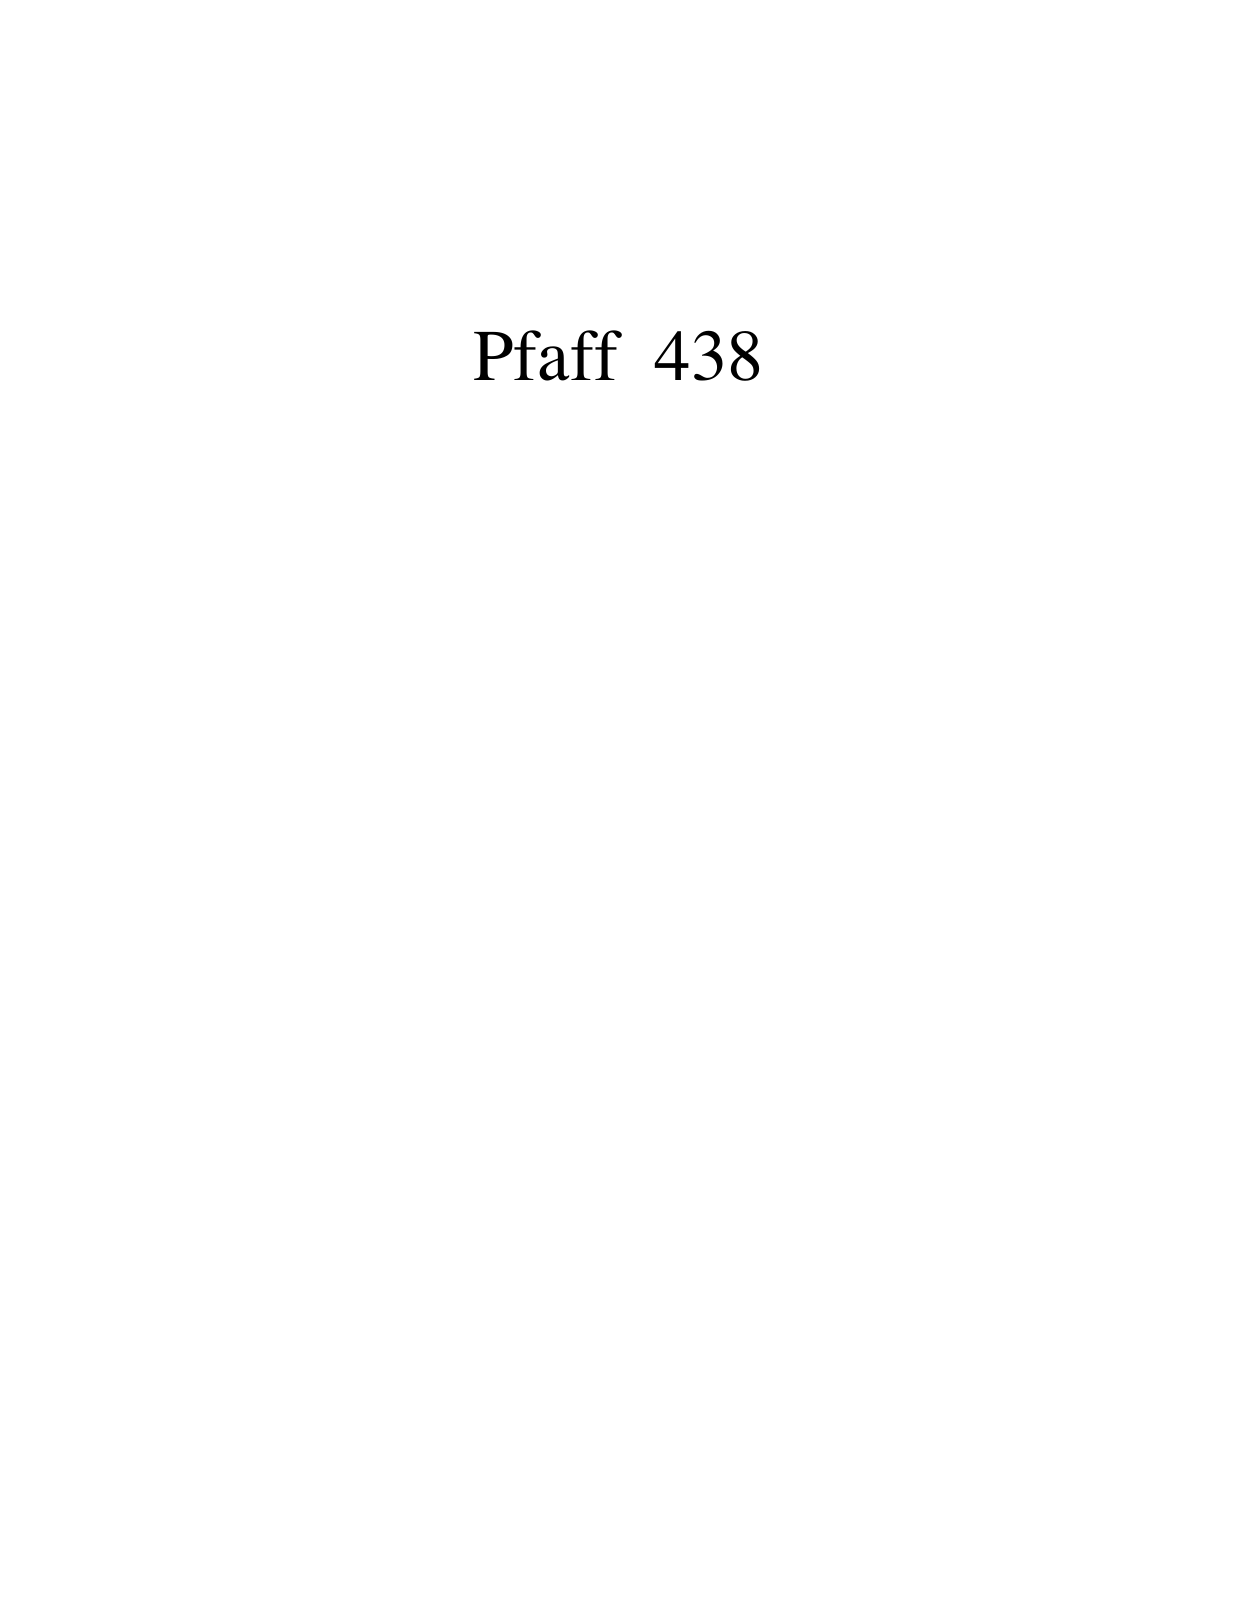 PFAFF 438 Parts List